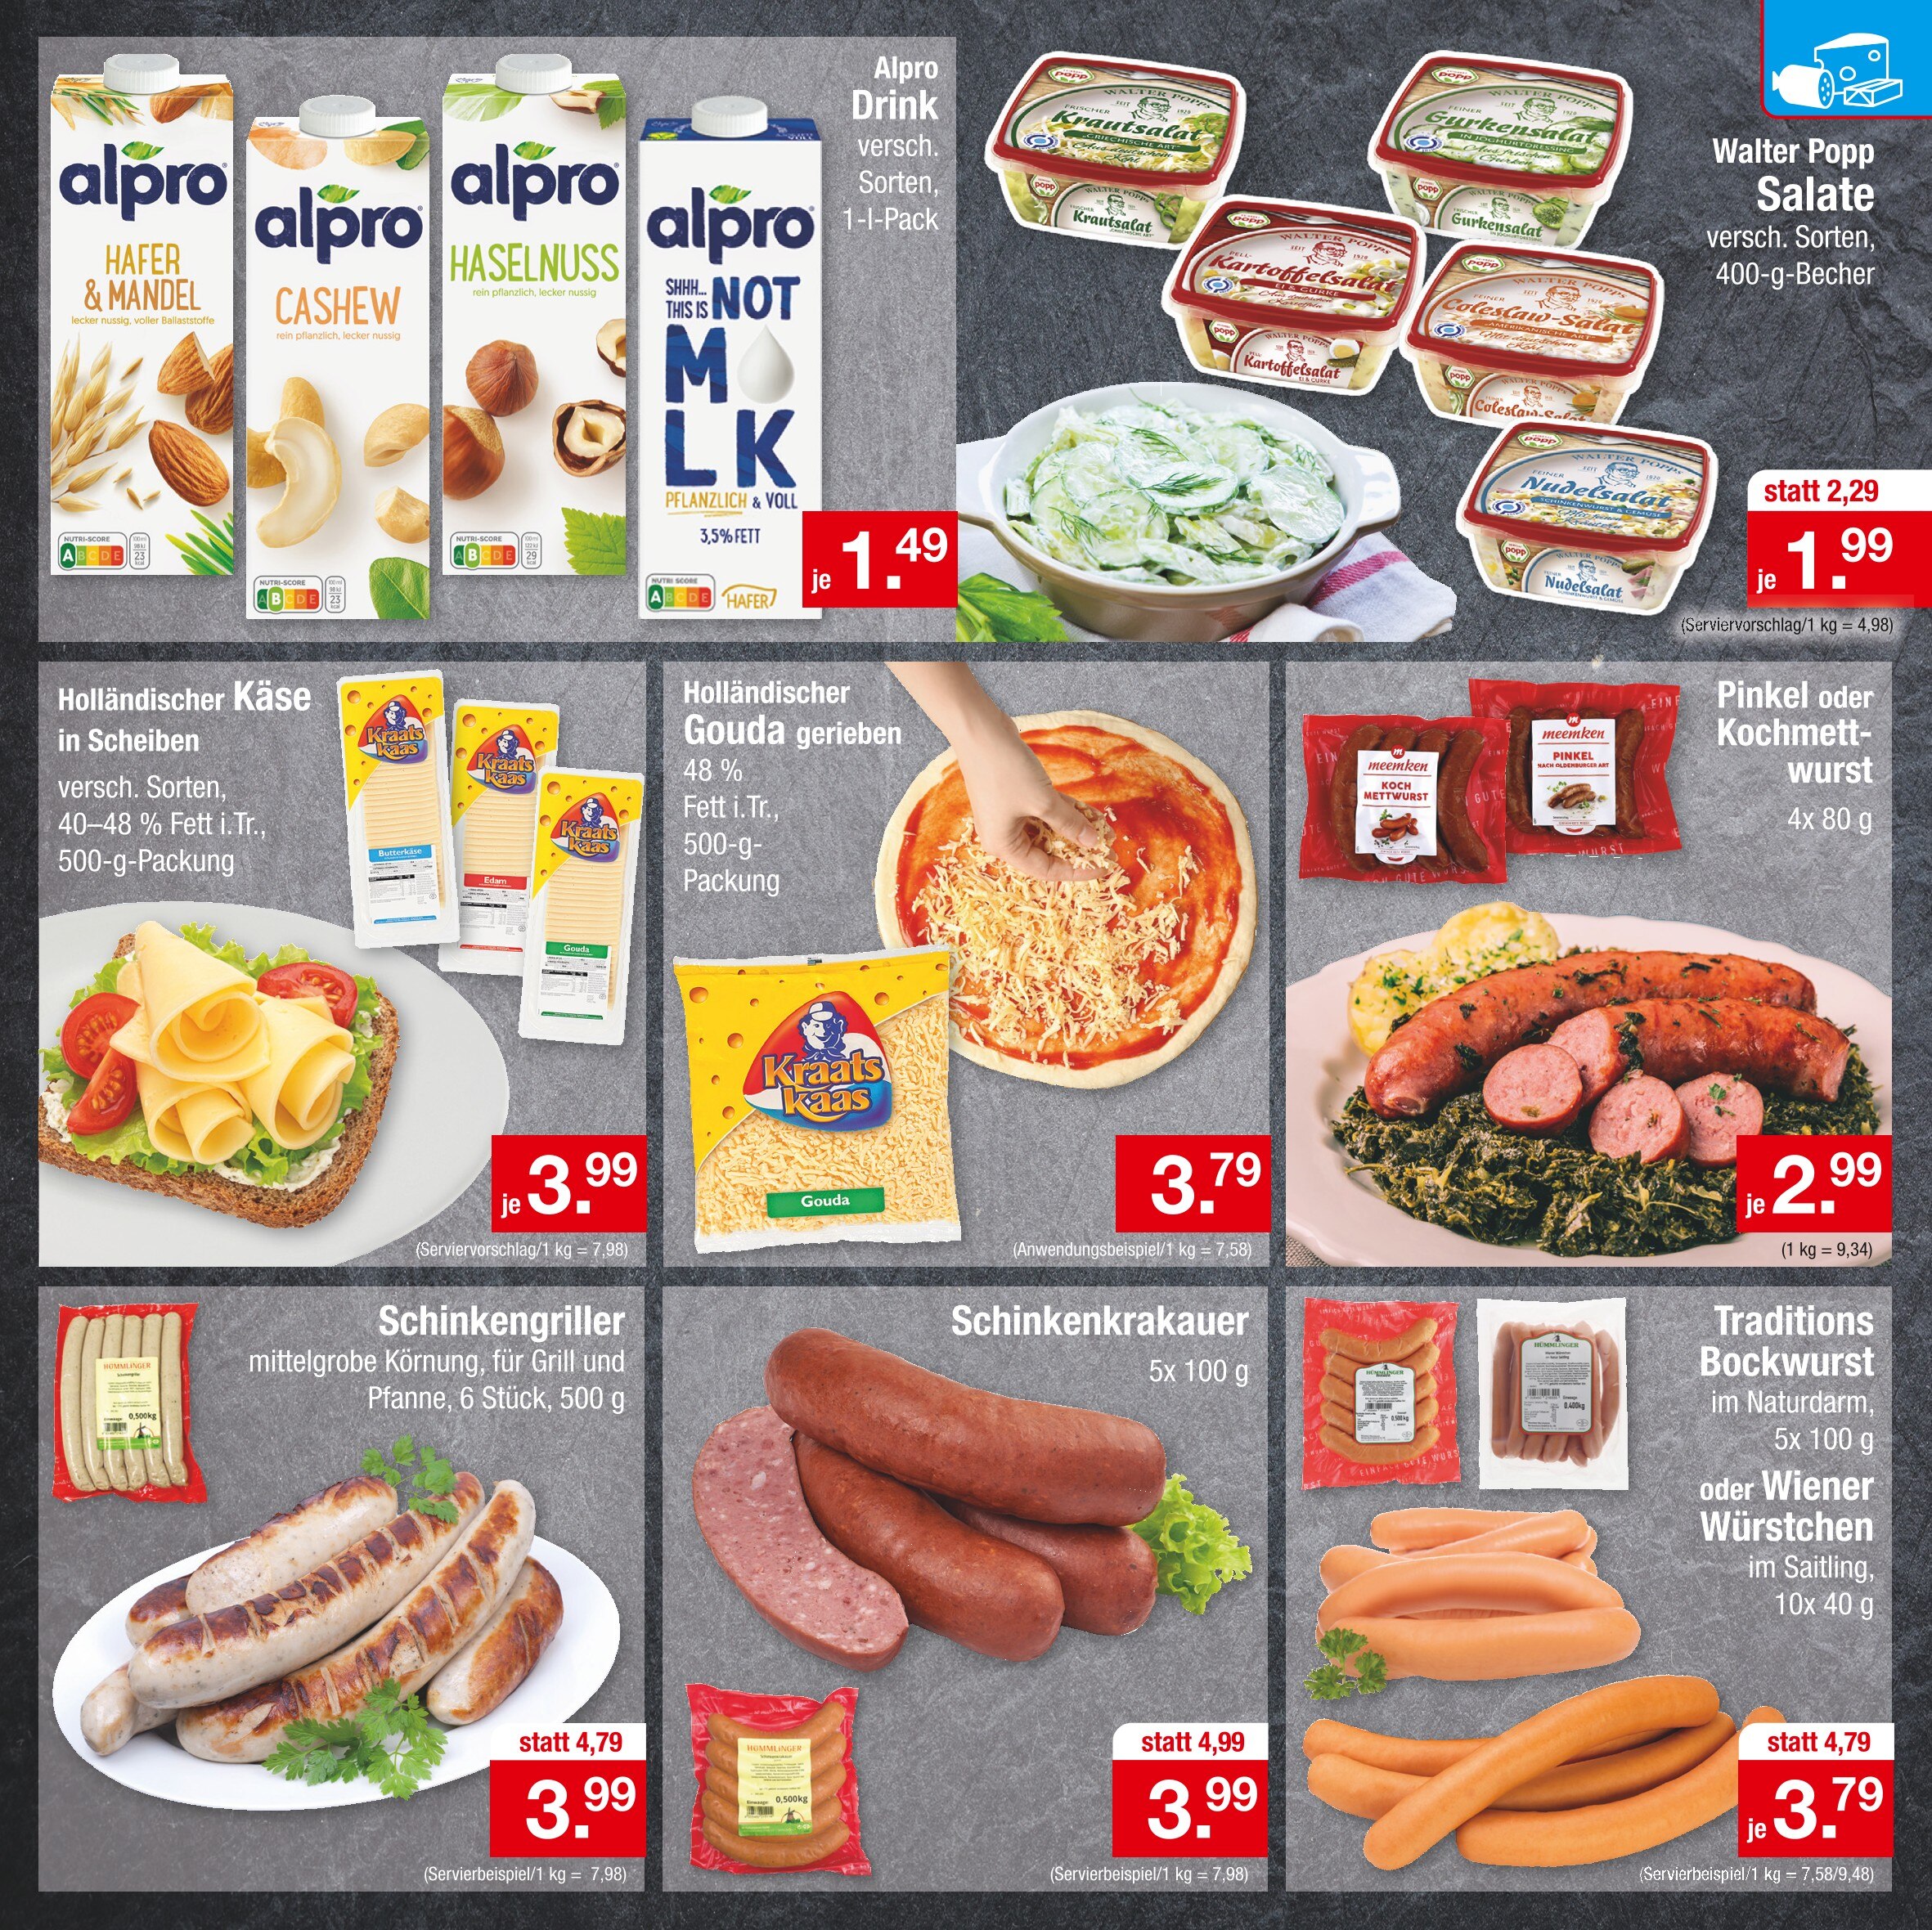 Bratwurst kaufen in Magdeburg Magdeburg günstige - Angebote in